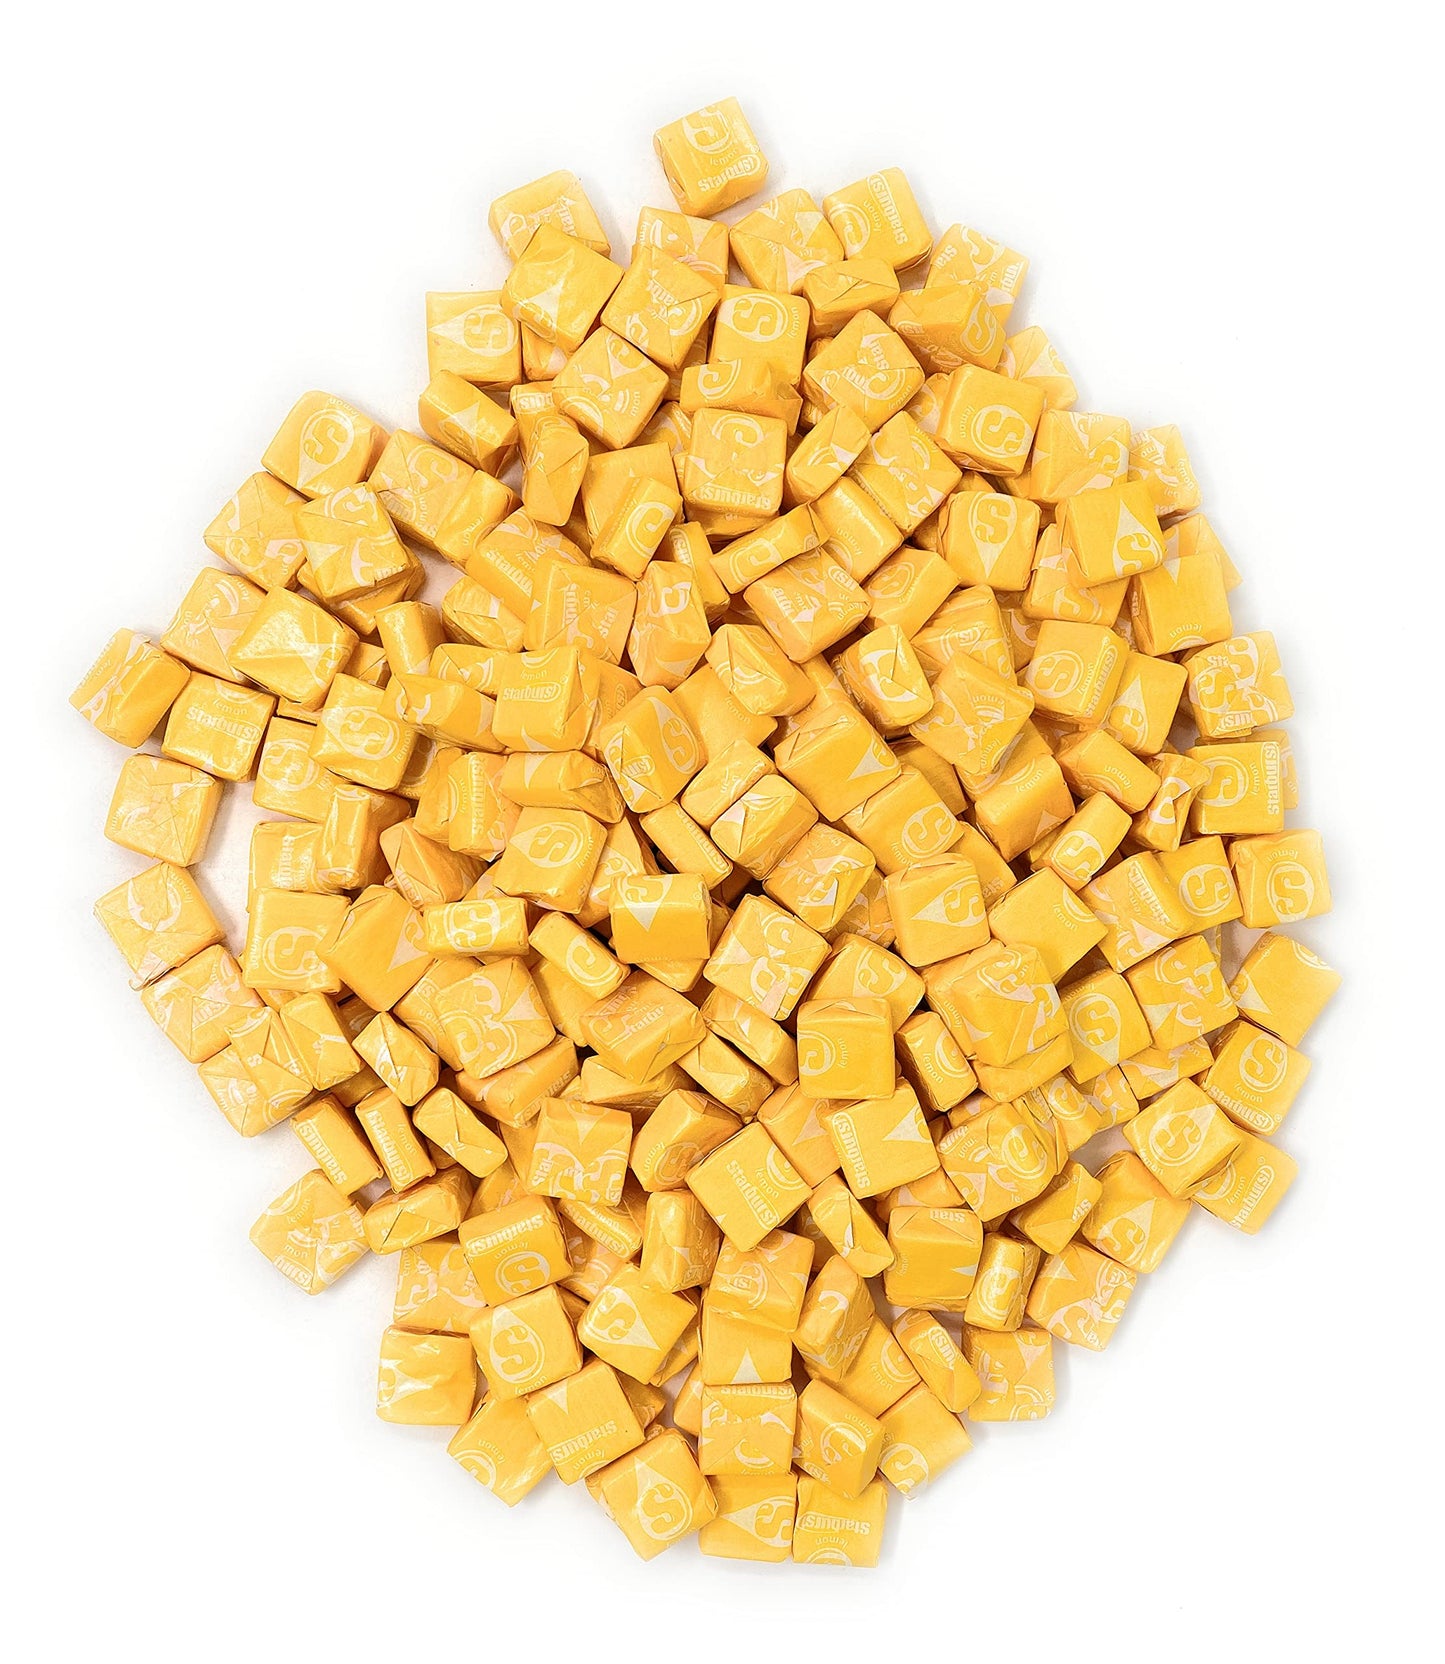 starburst-yellow-3lb-6.25